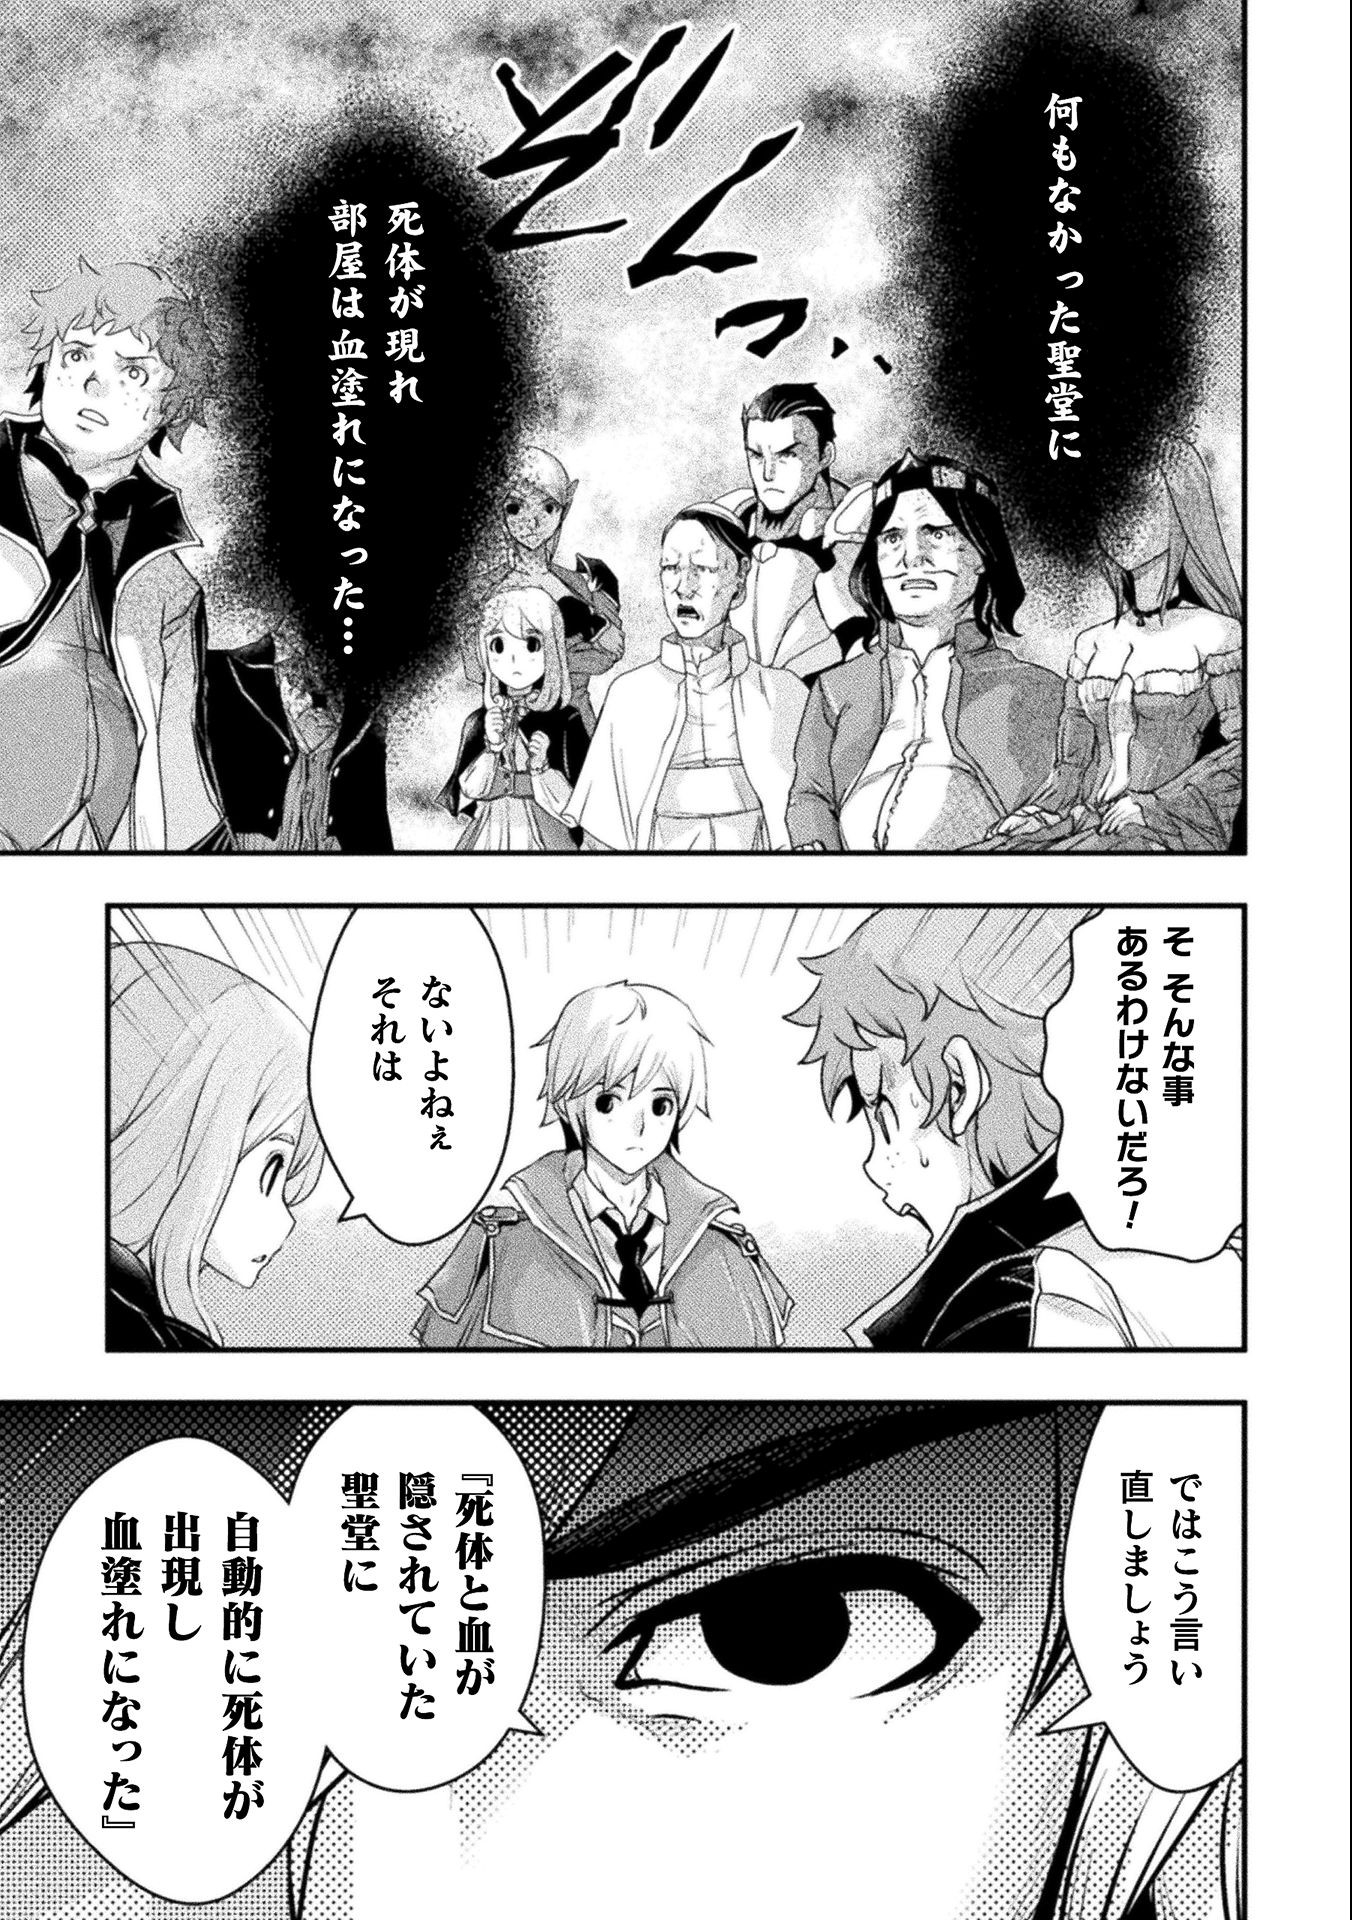 異世界の名探偵; Detectives from another world 第14話 - Page 9